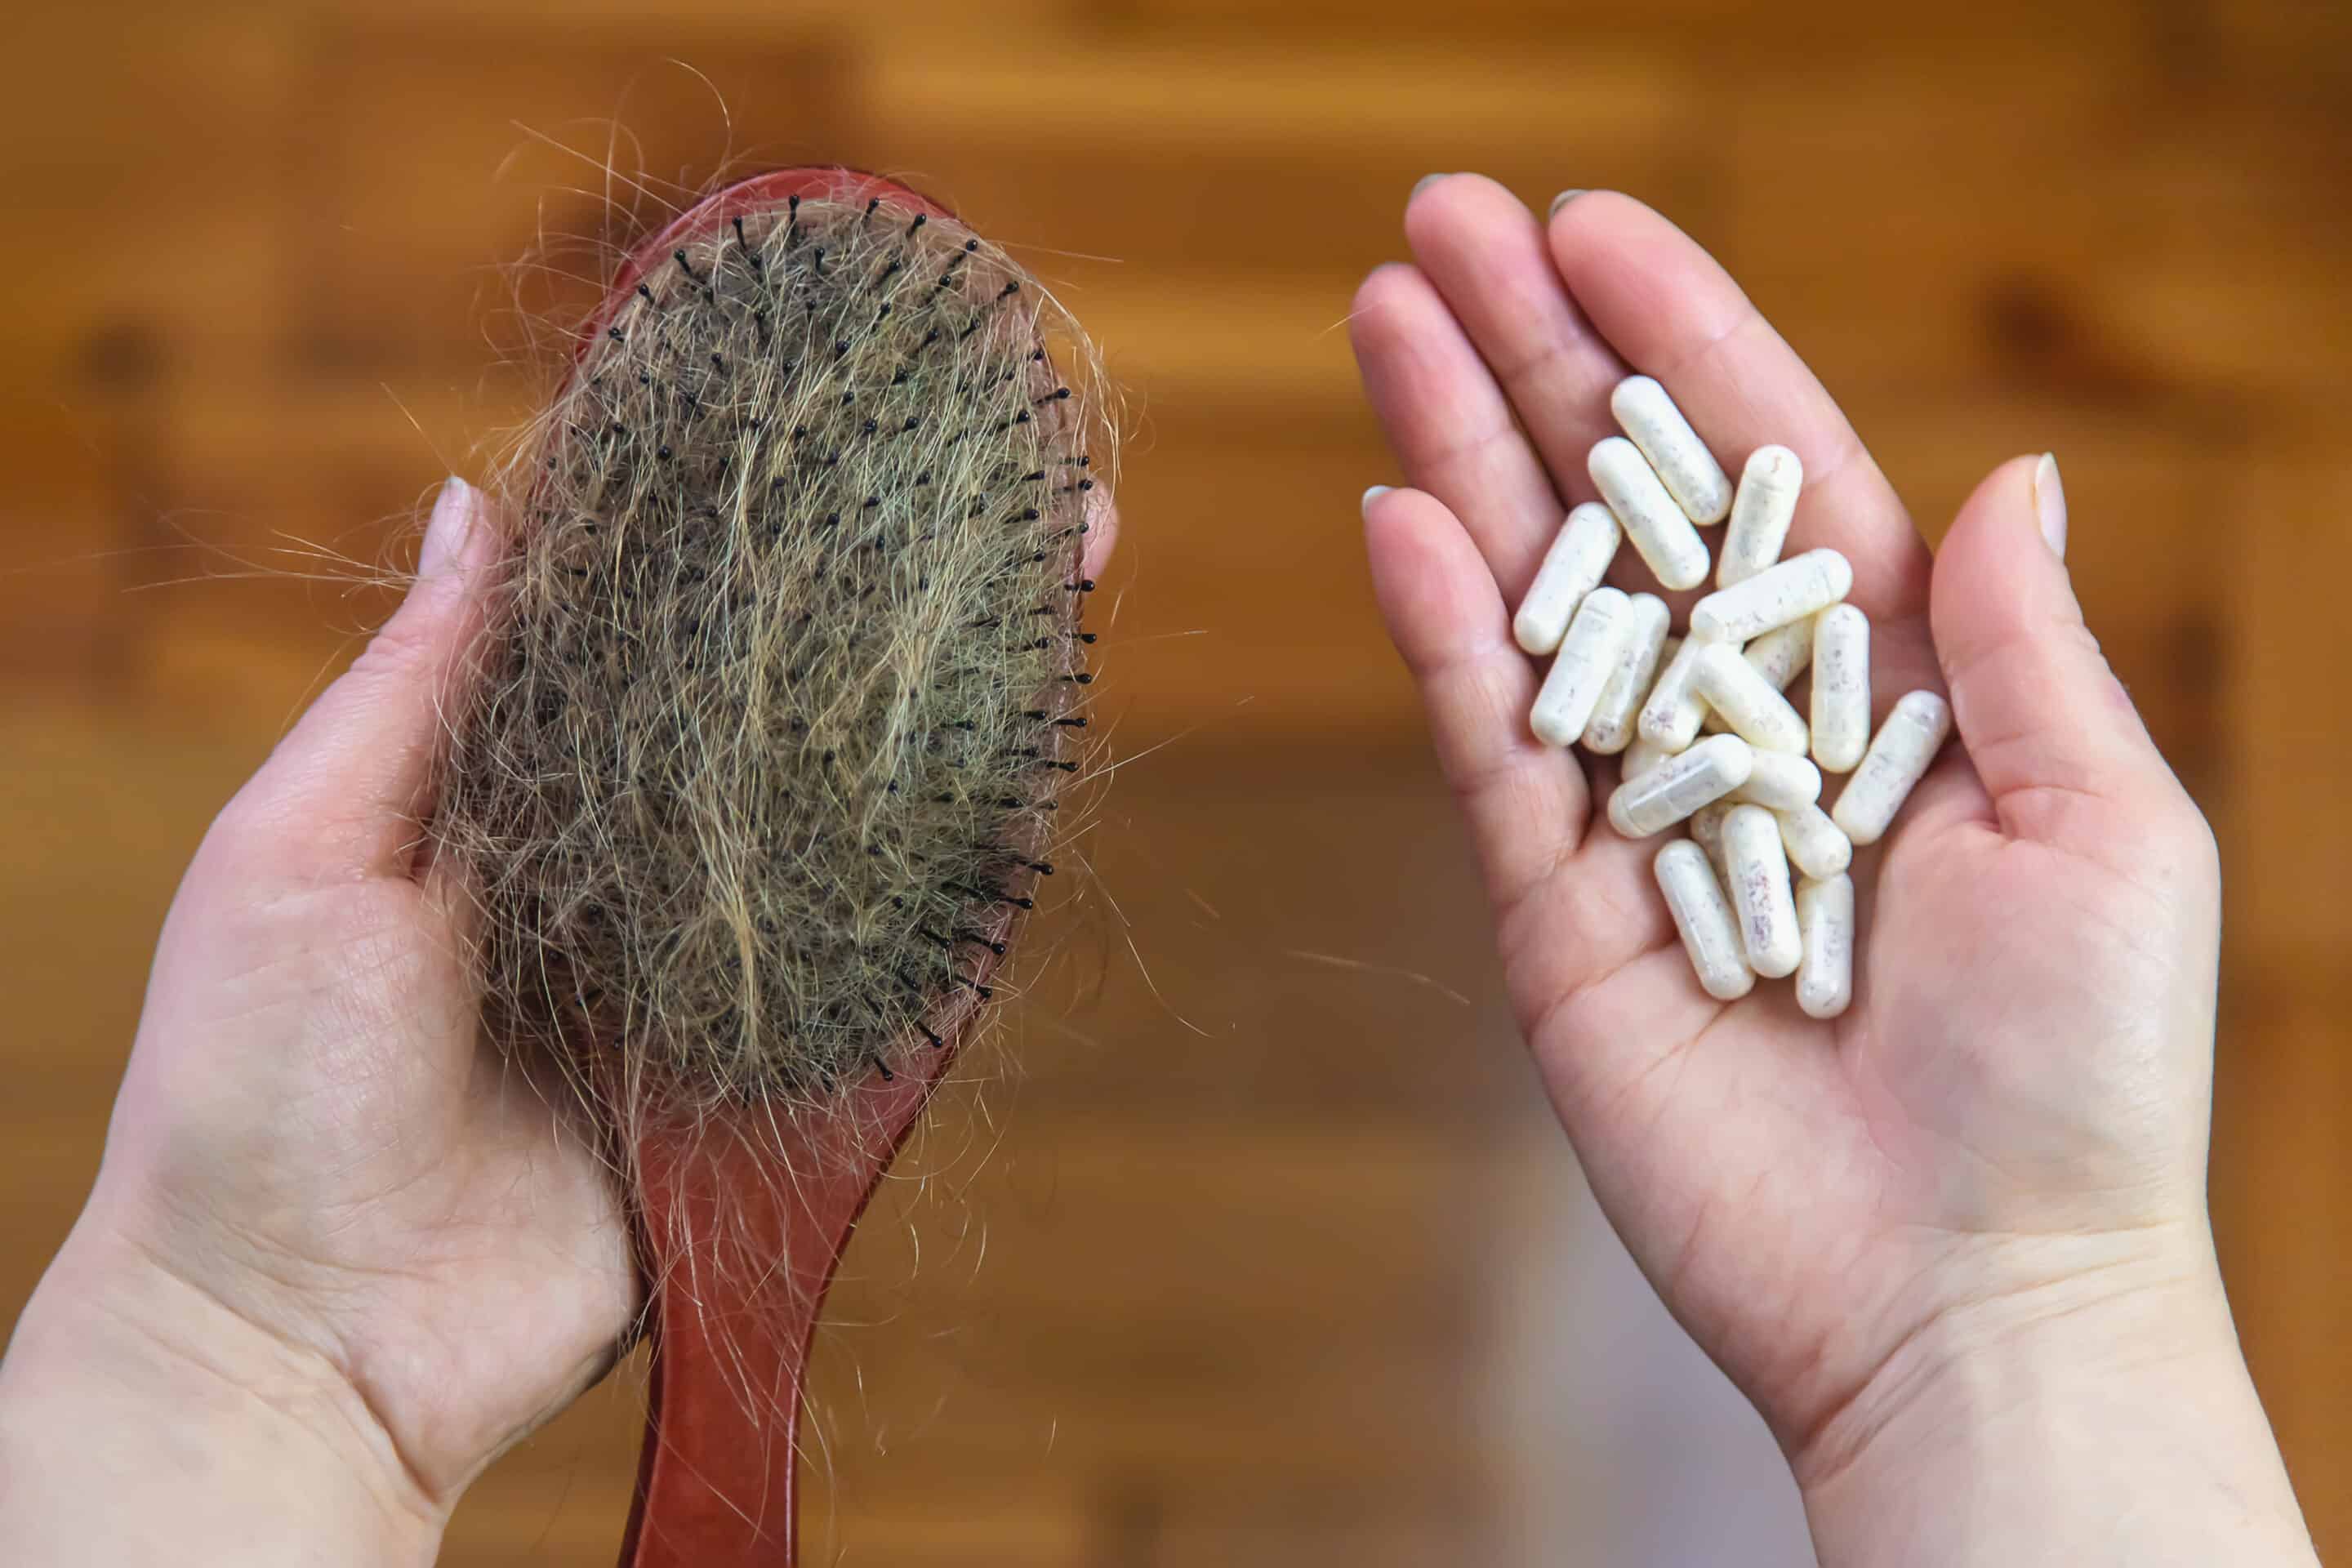 Eine Frau, die ihr Haarausfall vorbeugen möchte, hält Vitamine in ihrer Hand